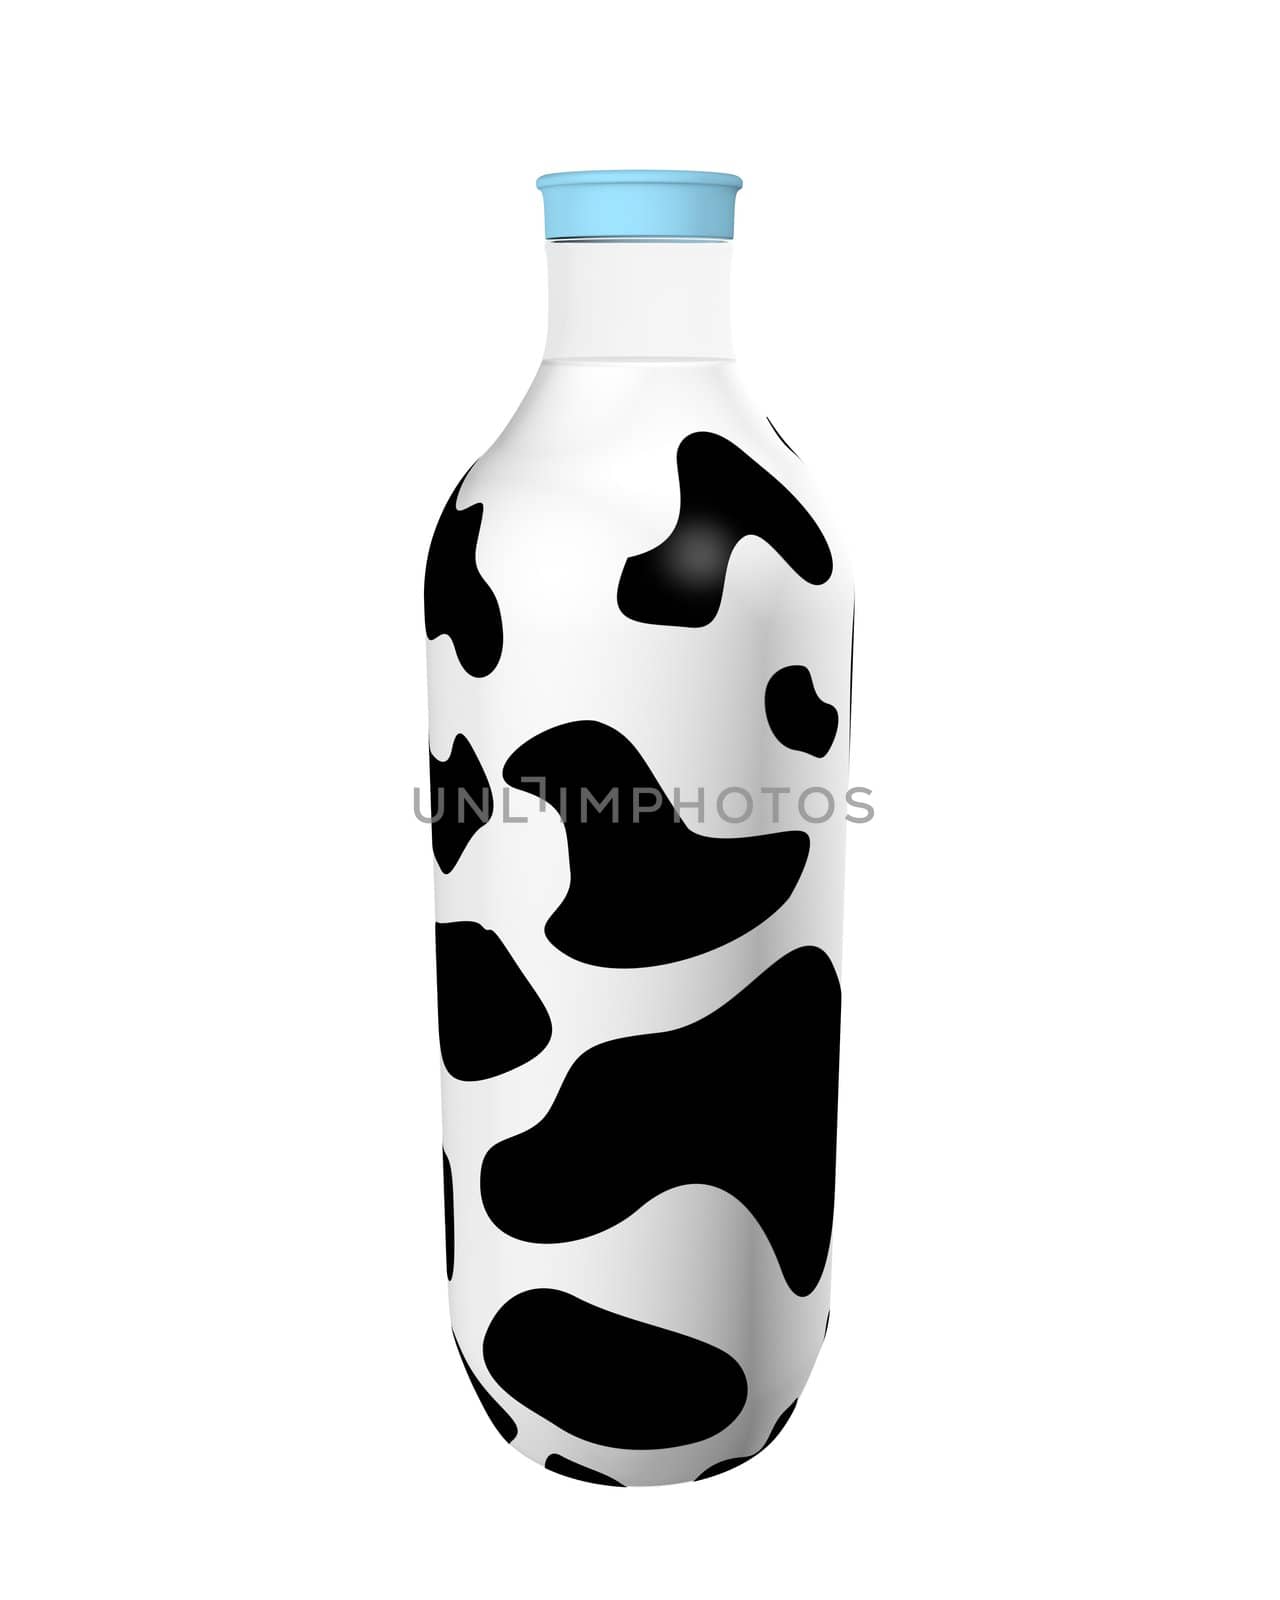 Full bottle of milk with black spots